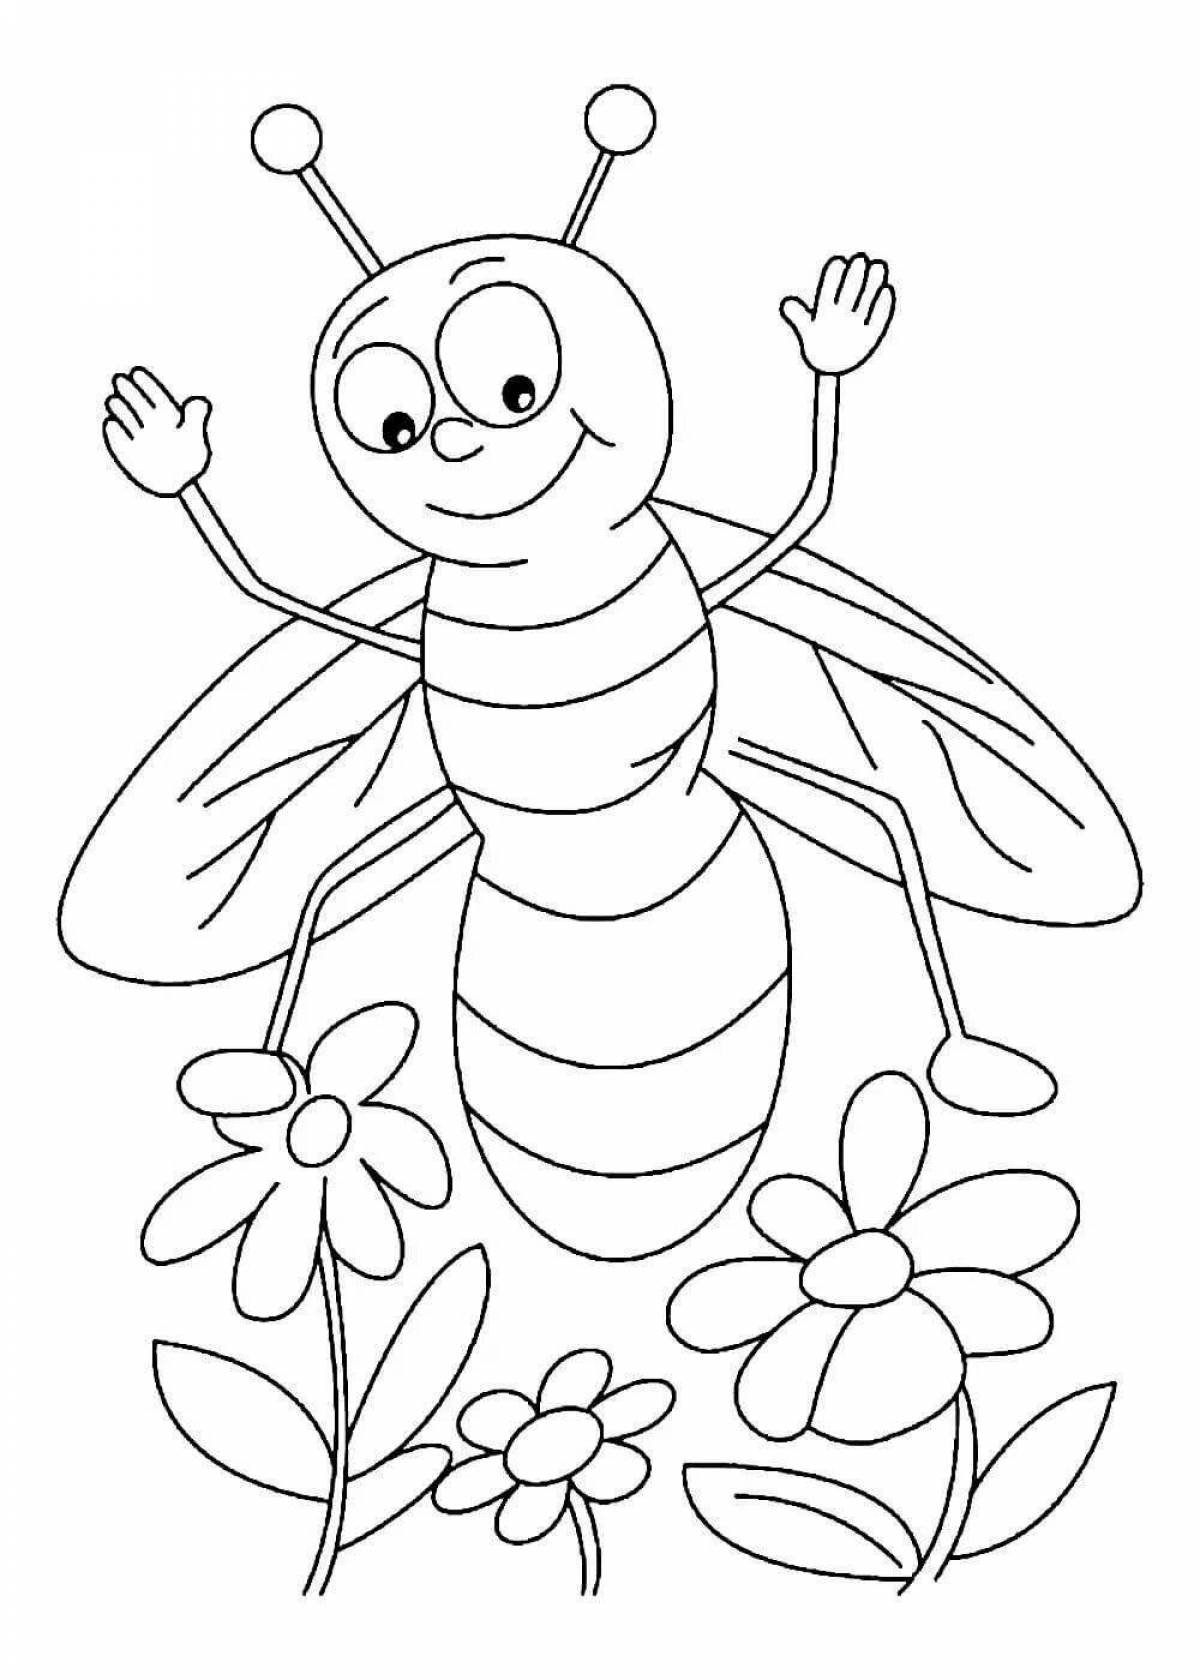 Раскраска насекомые для детей 7 лет. Насекомые. Раскраска. Пчела раскраска. Пчела раскраска для детей. Насекомые раскраска для детей.